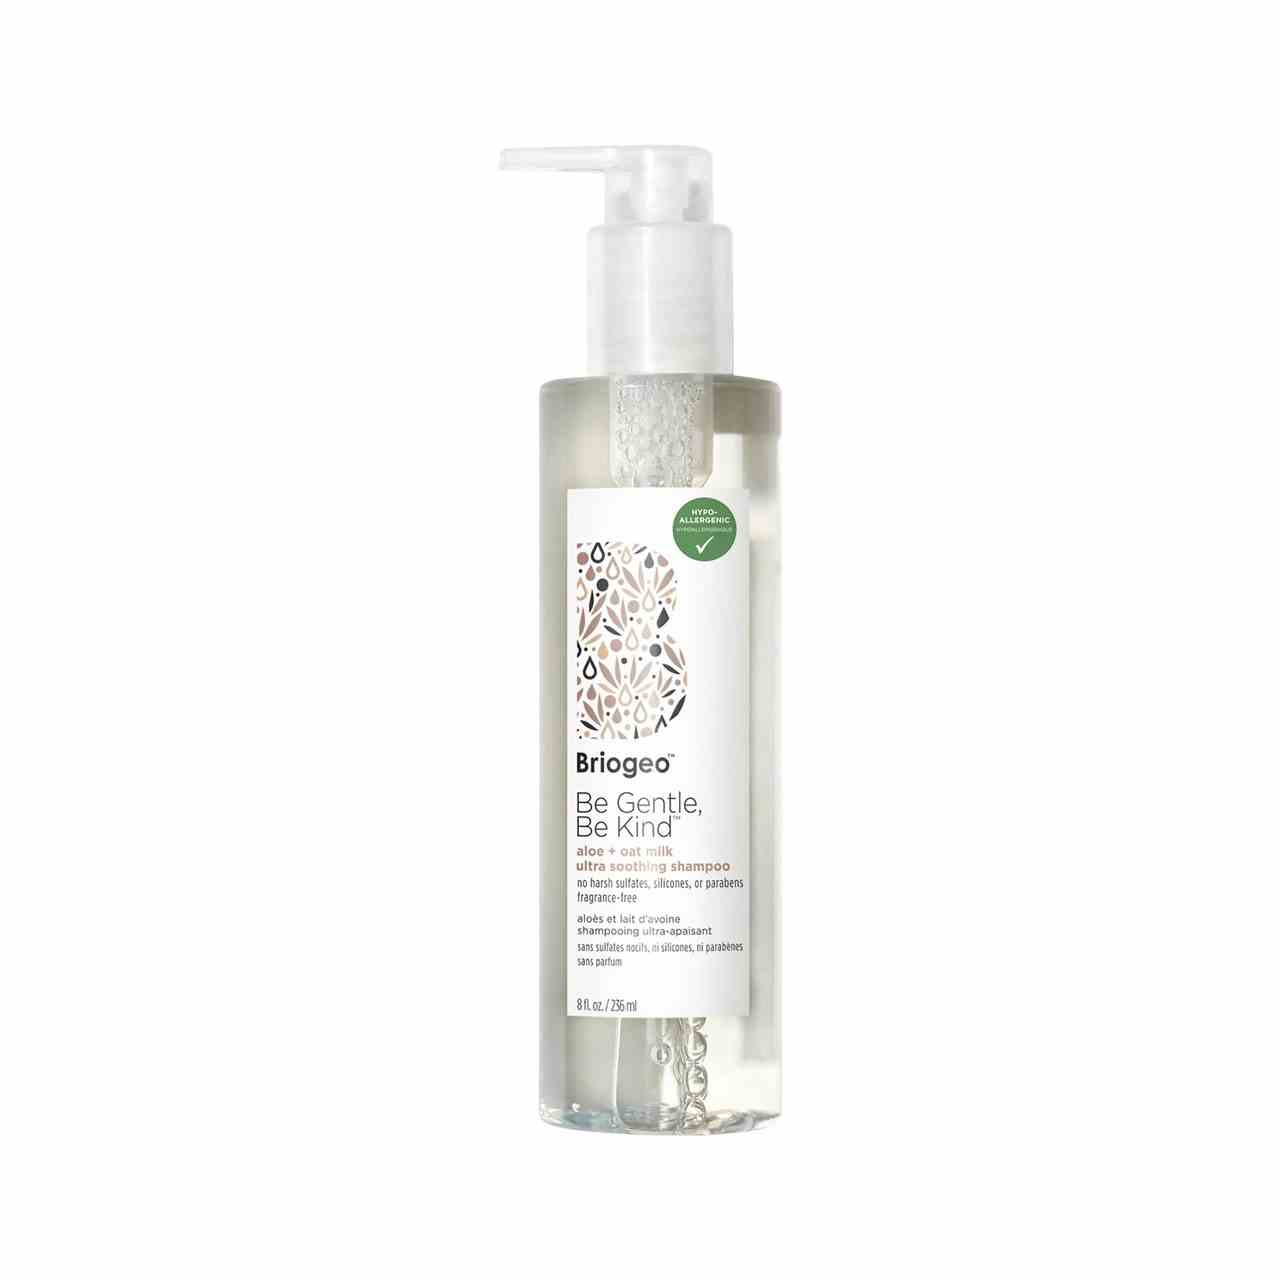 Briogeo Be Gentle, Be Kind Aloe + Oat Milk Ultra Soothing Shampoo transparente Flasche mit Pumpverschluss auf weißem Hintergrund